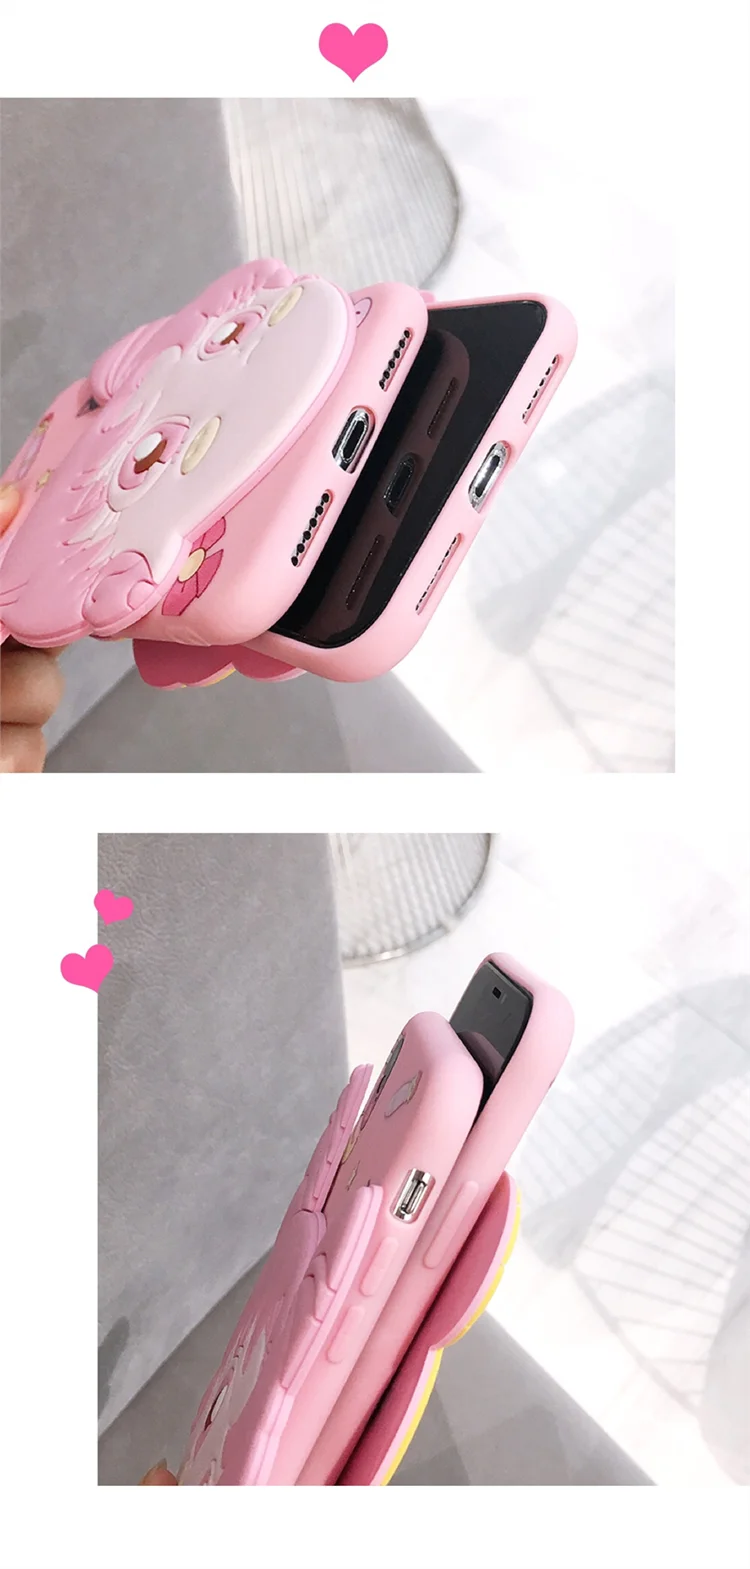 Чехол для телефона SAM S10 с милым 3D Сейлор Мун для samsung S10E/S10 plus/S8/S8plus/S9 plus/S7/S6 Edge розовый чехол для мобильного телефона